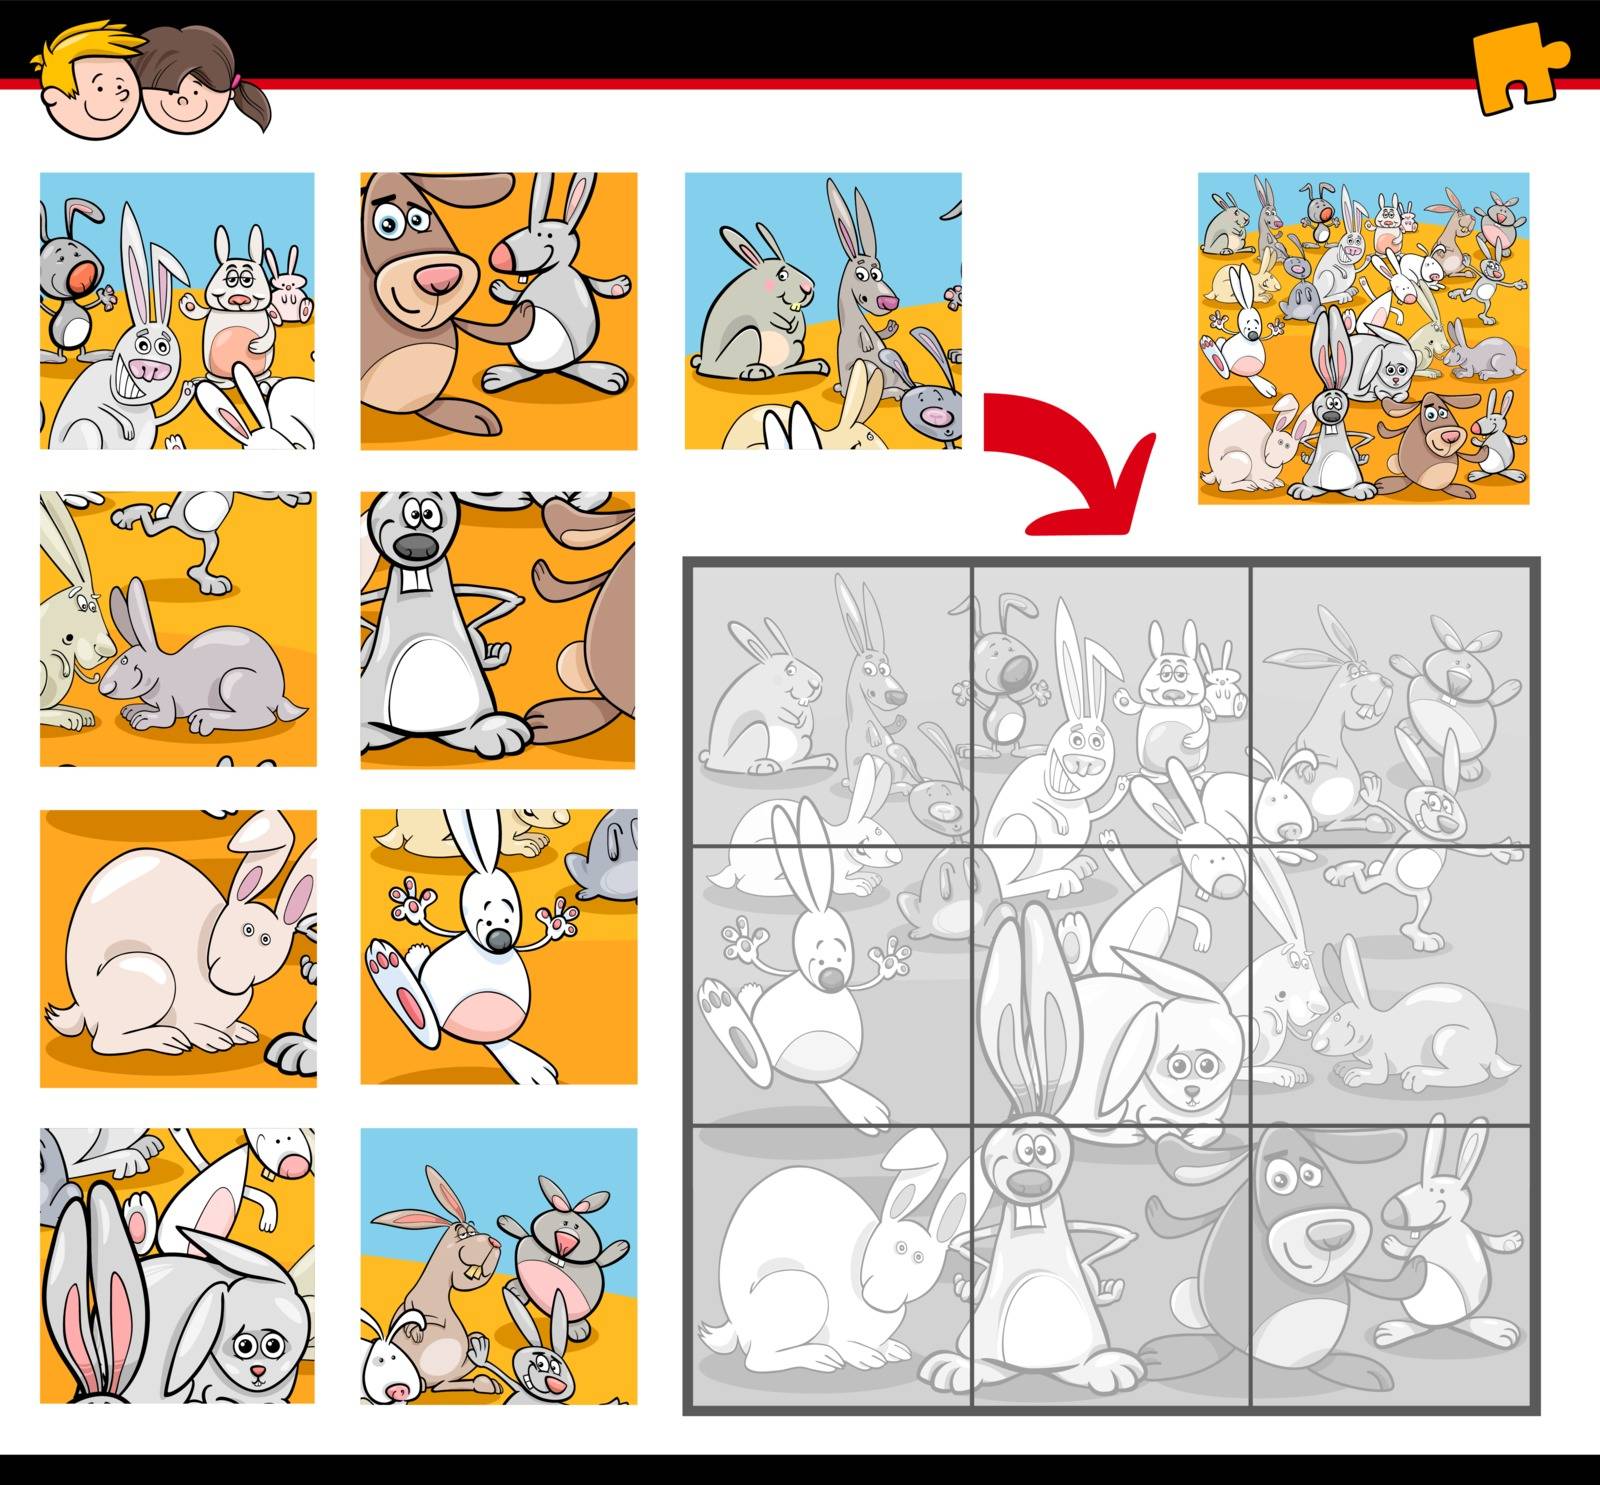 jigsaw puzzle game with bunnies by izakowski